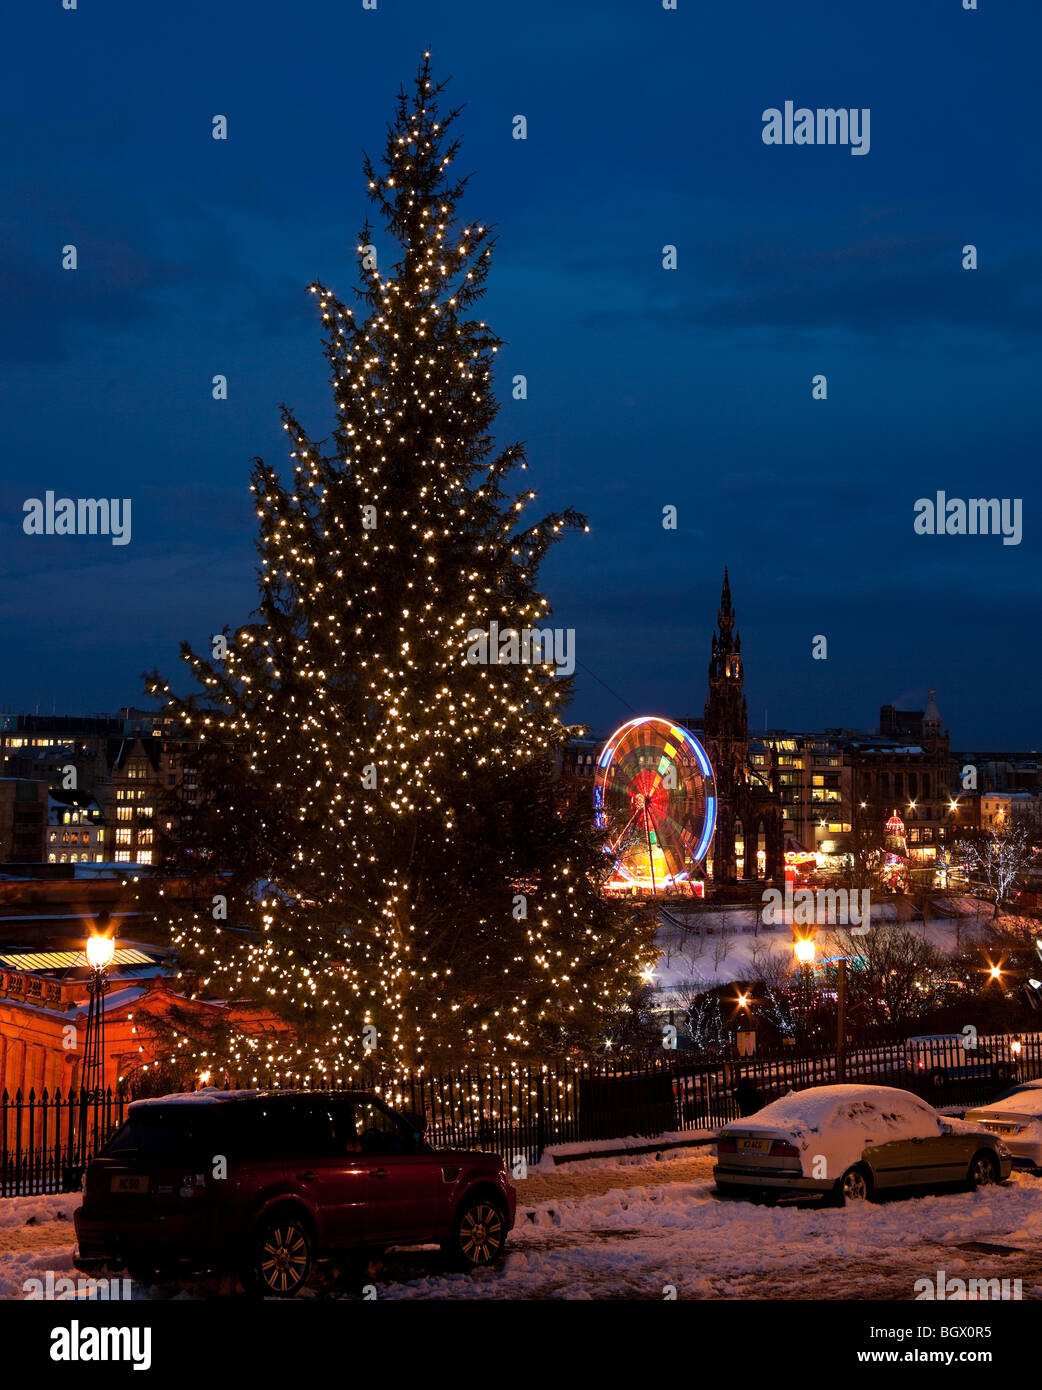 El montículo de nieve árbol de Navidad con Edimburgo Scotland Reino Unido Europa Foto de stock